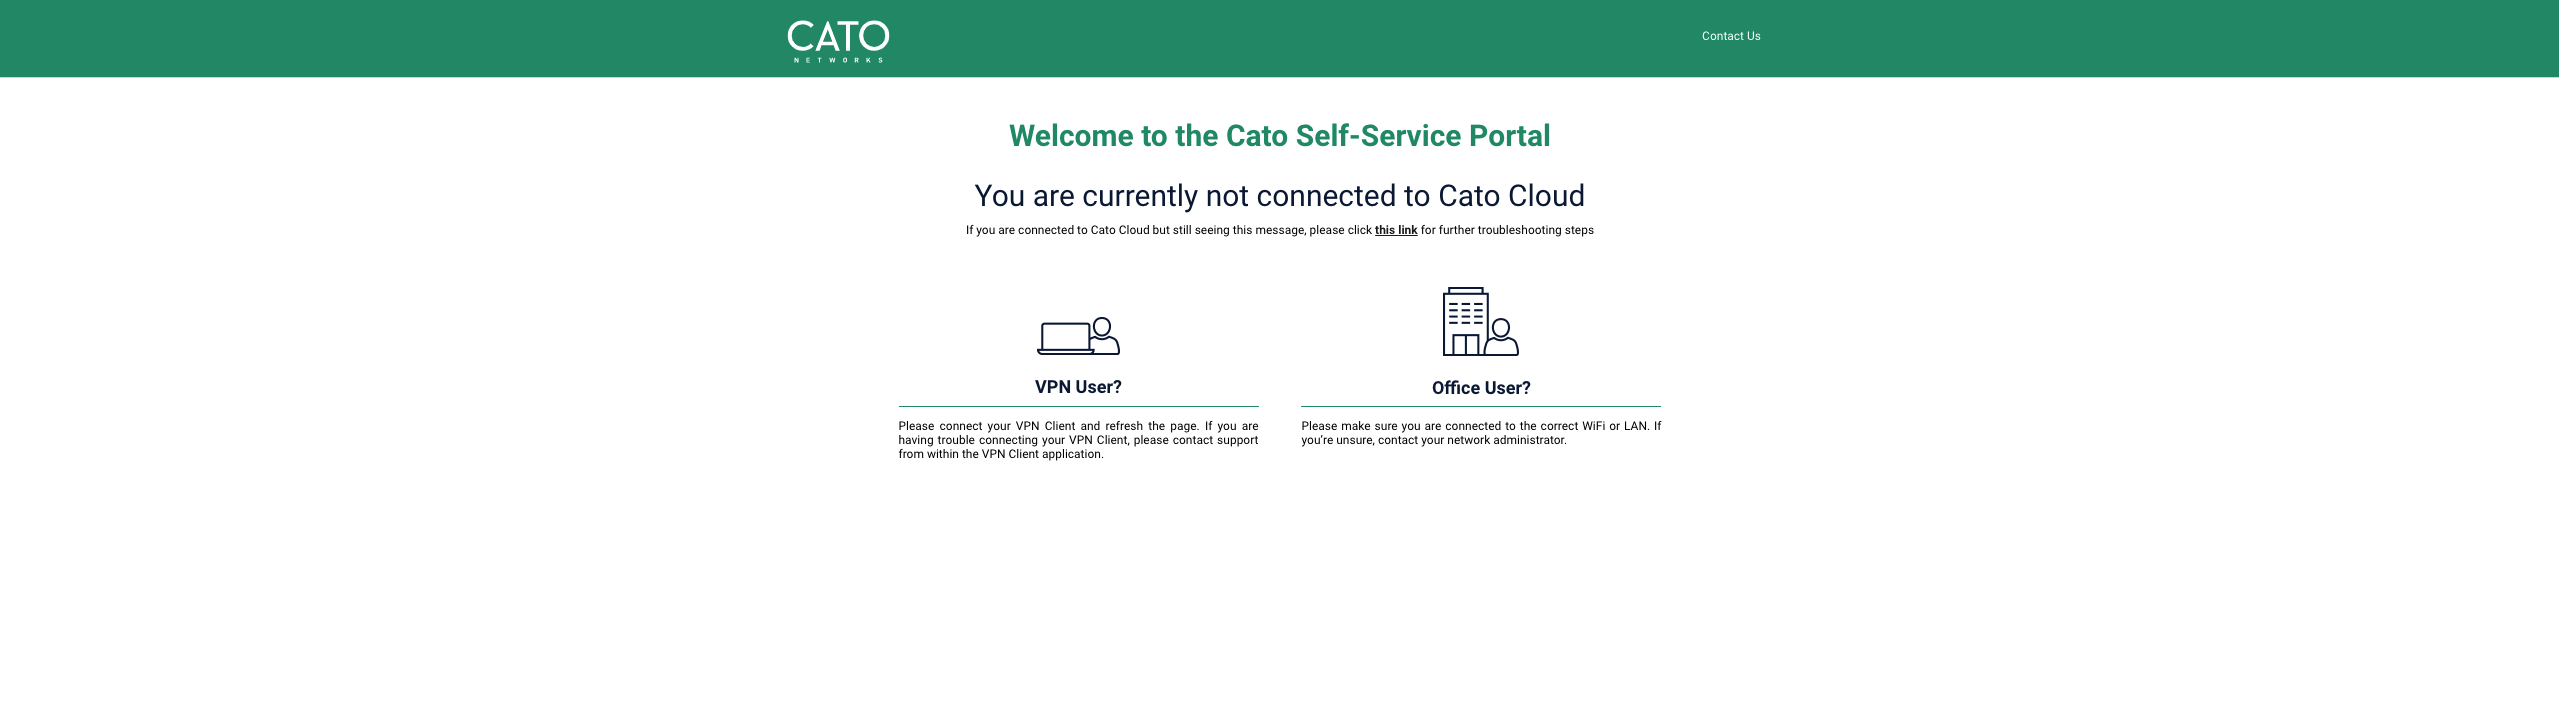 Cato_Self-Service_Portal-2.png